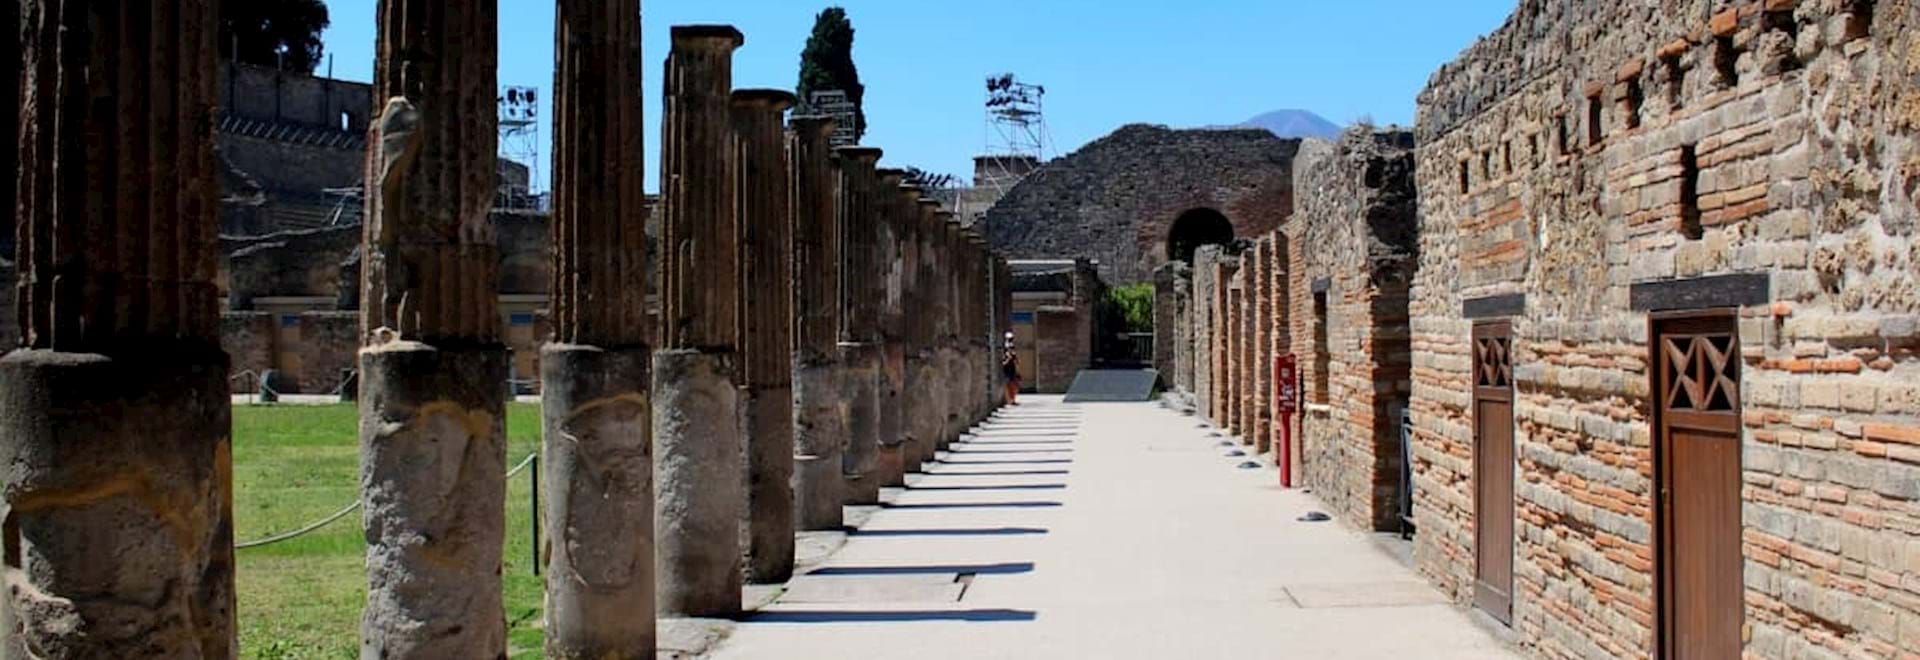 Pillar walkway in Pompeii